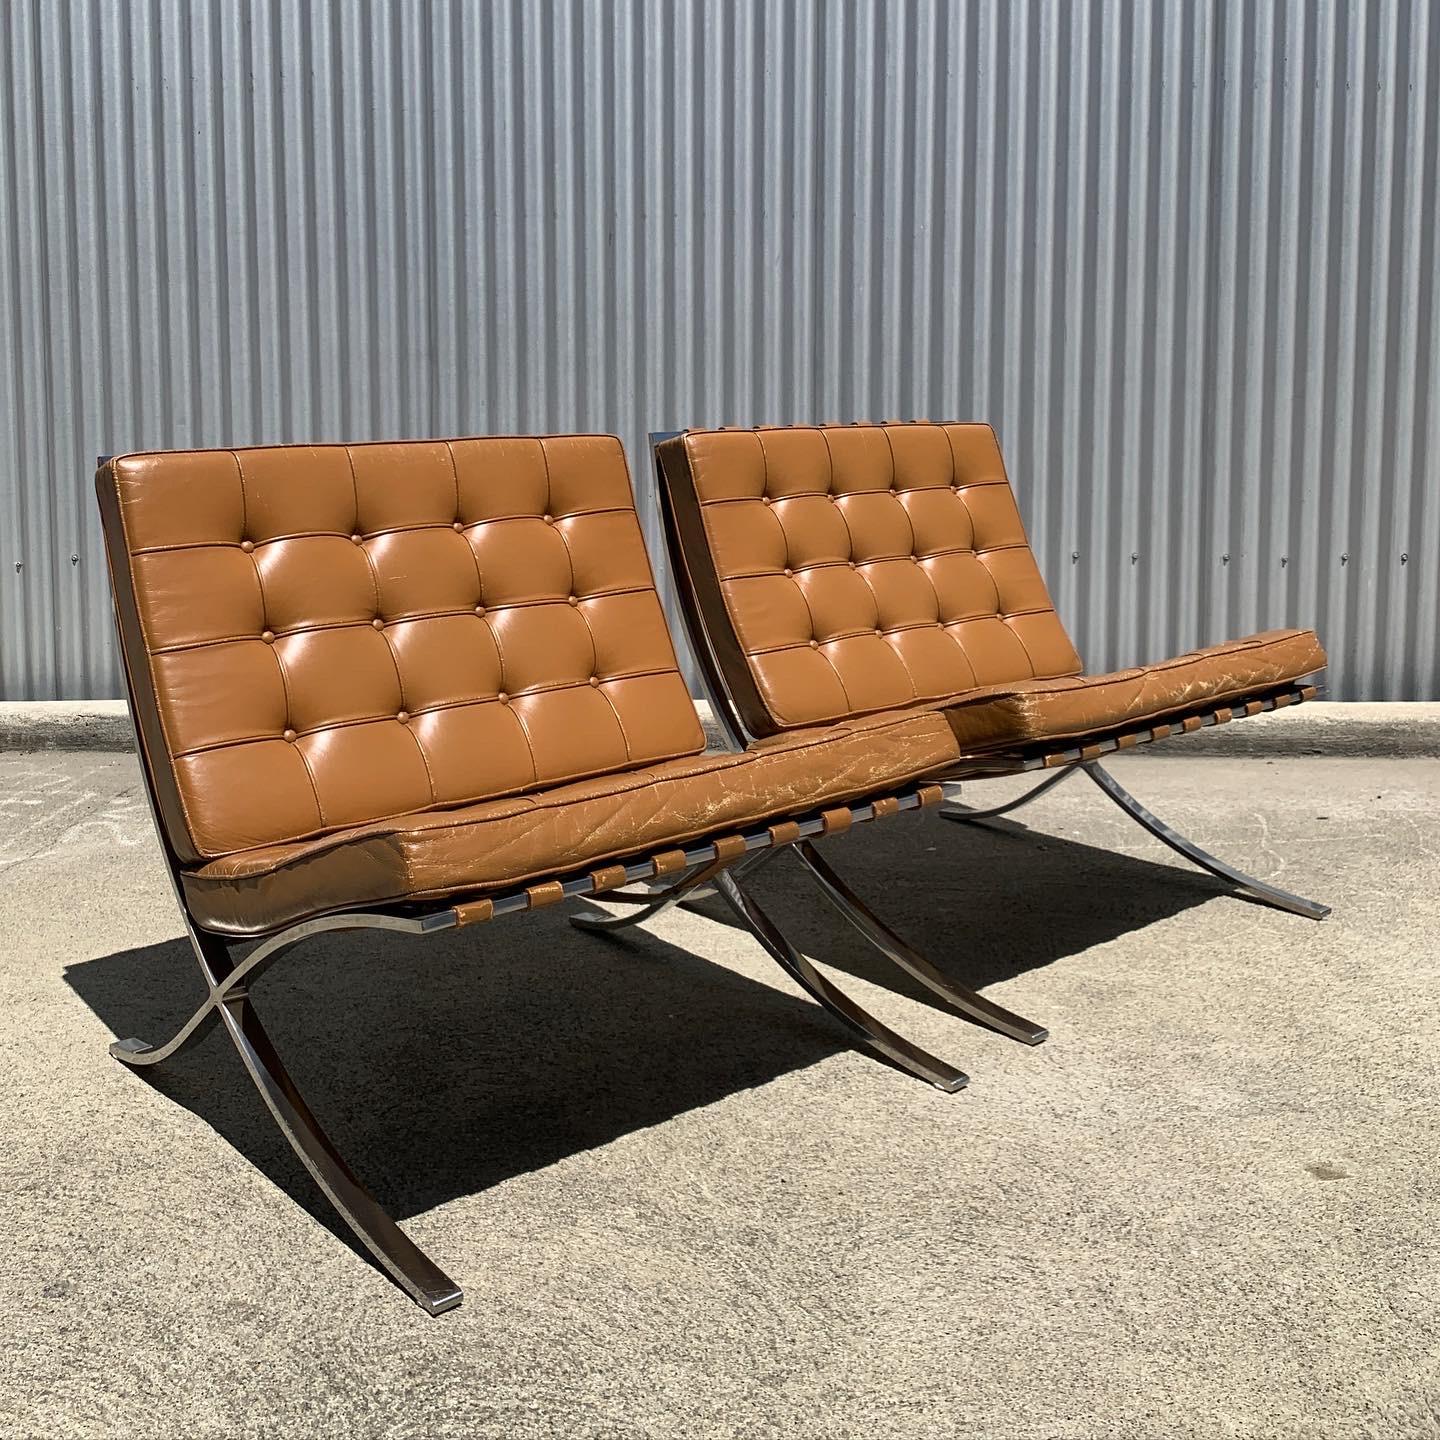 Ces chaises de Barcelone ont été conçues par Mies van der Rohe en 1929 et produites par Knoll International dans les années 1970.

Les chaises sont recouvertes d'un incroyable cuir cognac teint à la main et reposent sur une base en acier